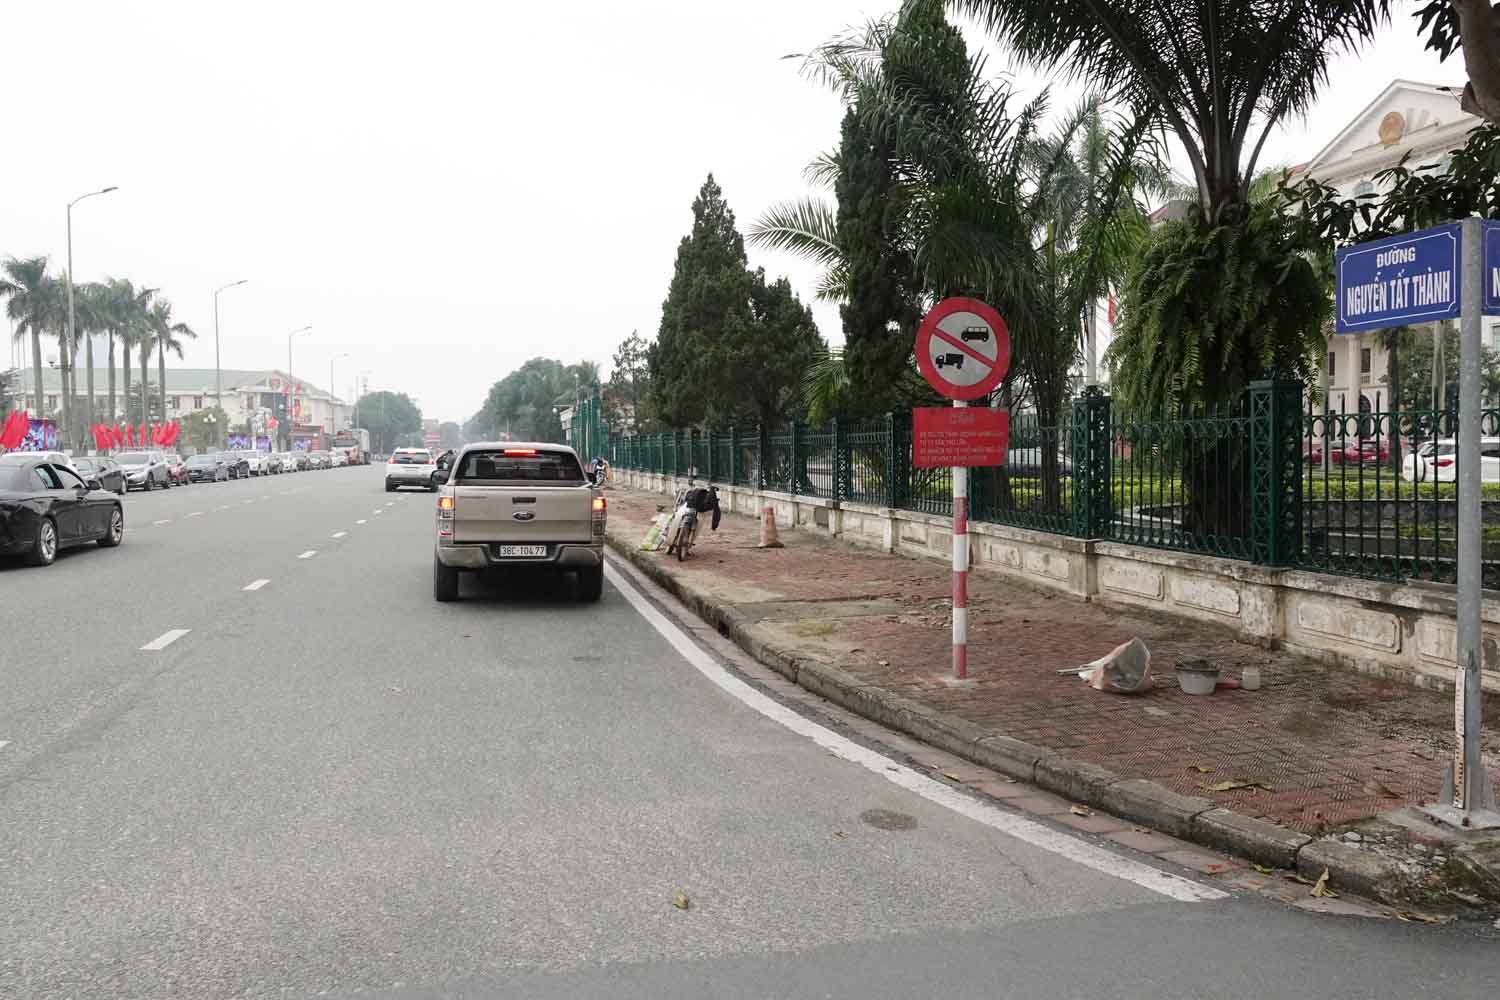 Đường Nguyễn Tất Thành là một trong 5 tuyến đường sẽ cấm phương tiện khi diễn ra chương trình nghệ thuật. Ảnh: Trần Tuấn.